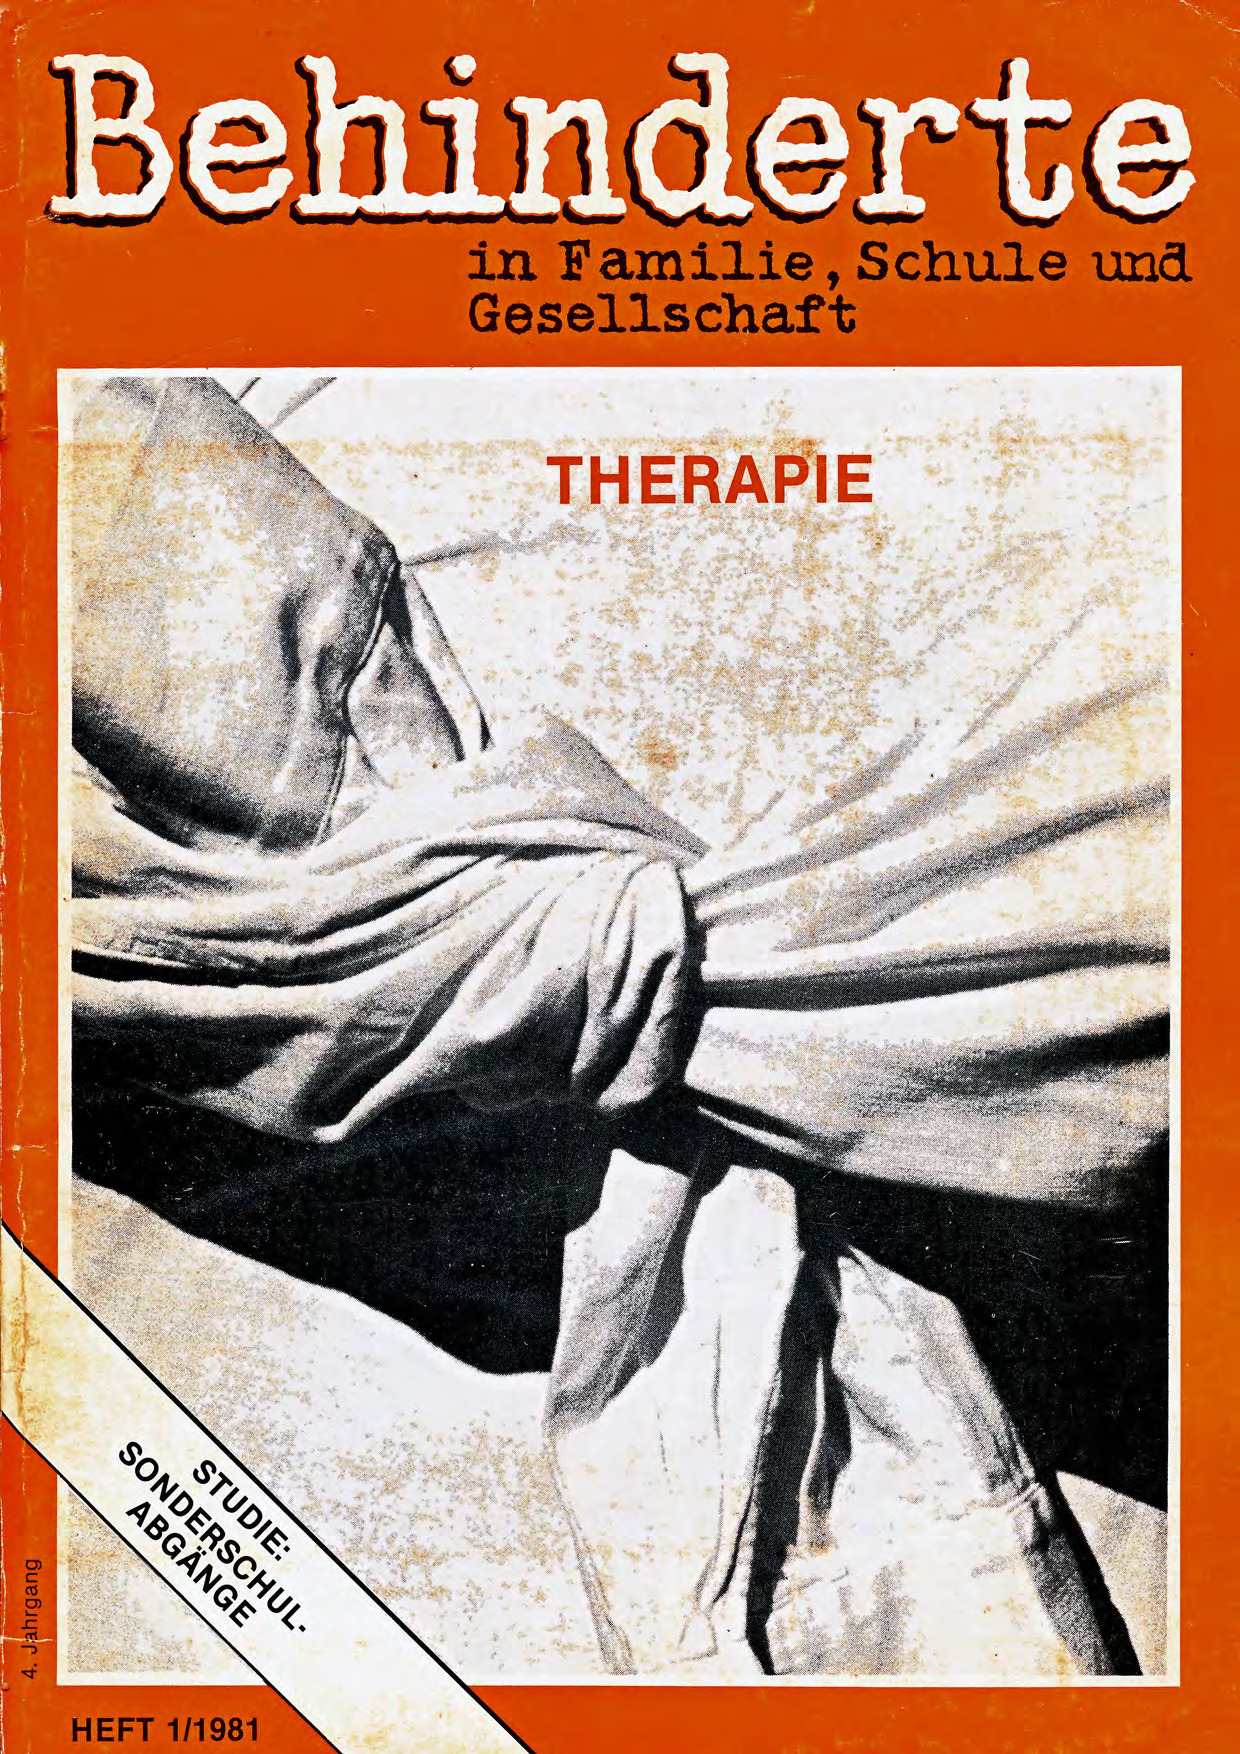 Titelbild der Zeitschrift BEHINDERTE MENSCHEN, Ausgabe 1/1981 "Therapie"